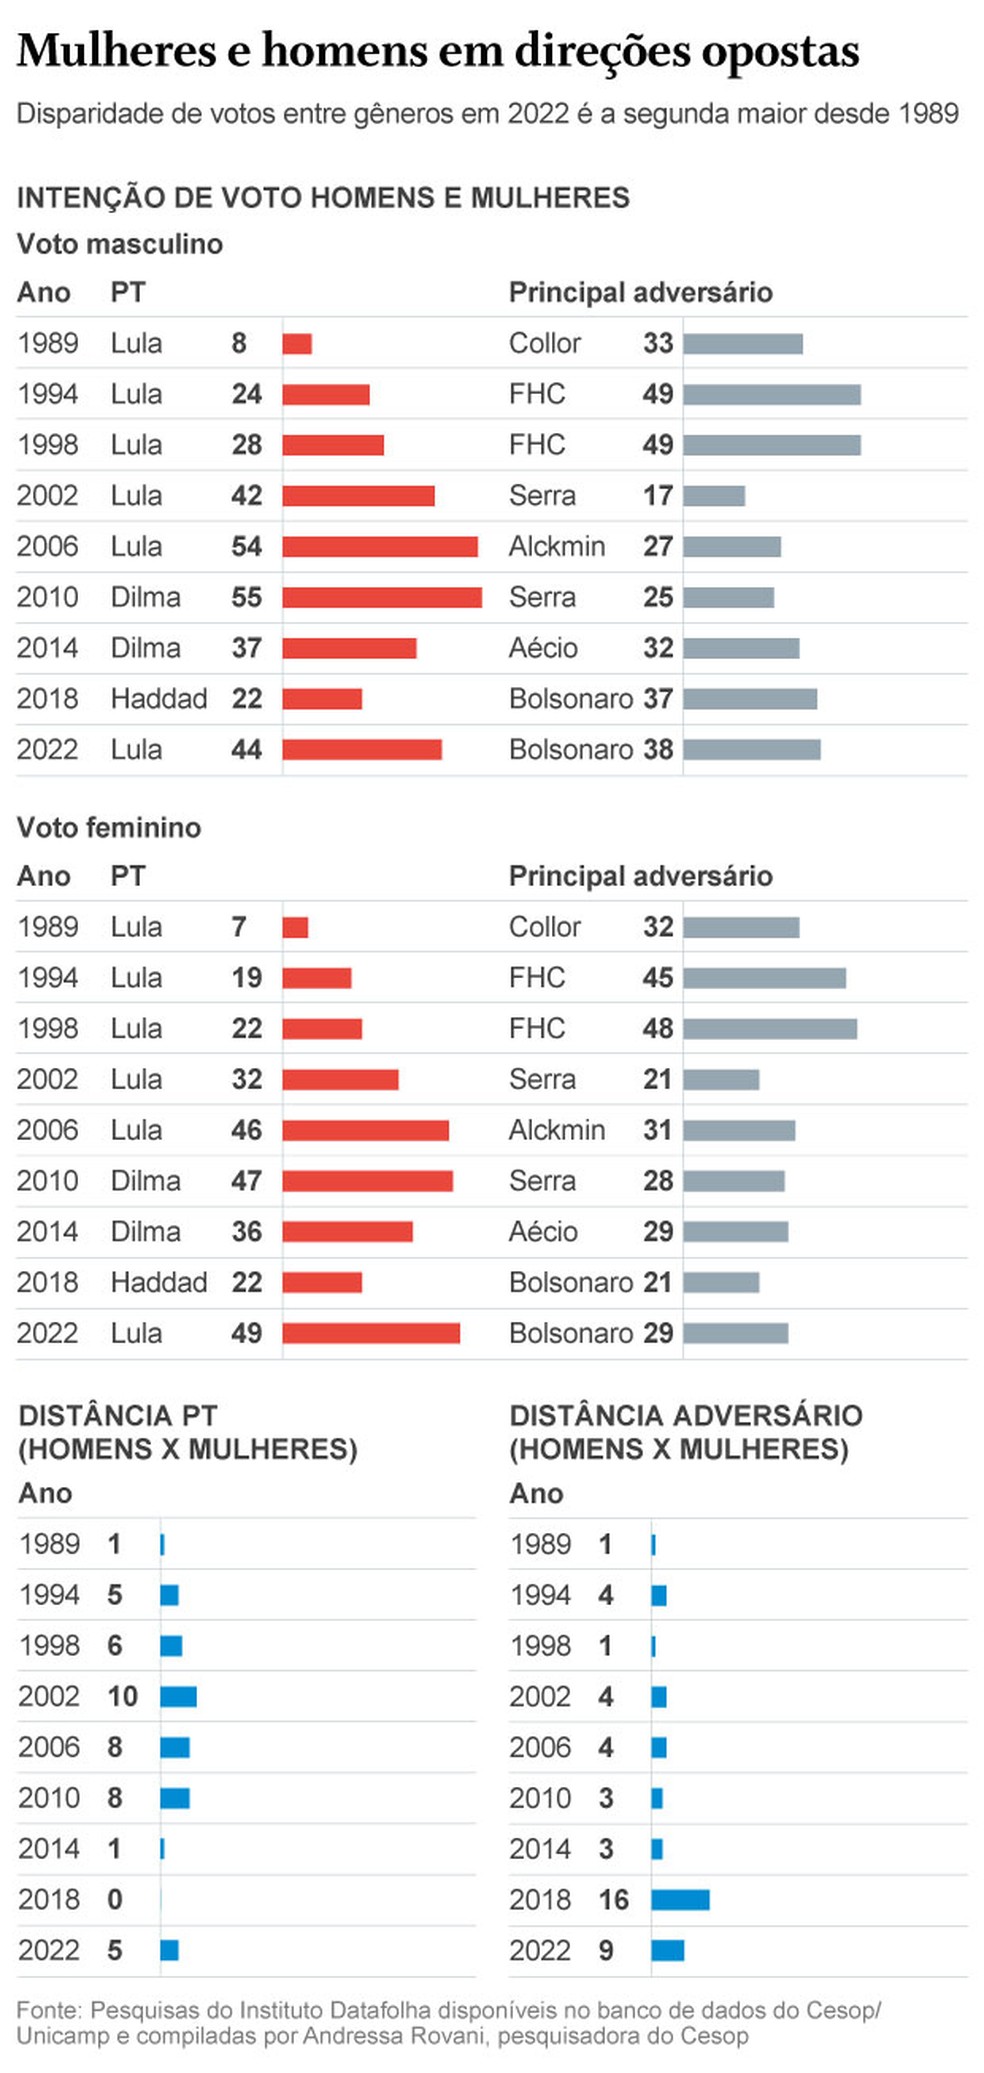 Mulheres e homens em direÃ§Ãµes opostas â Foto: Infografia/O Globo